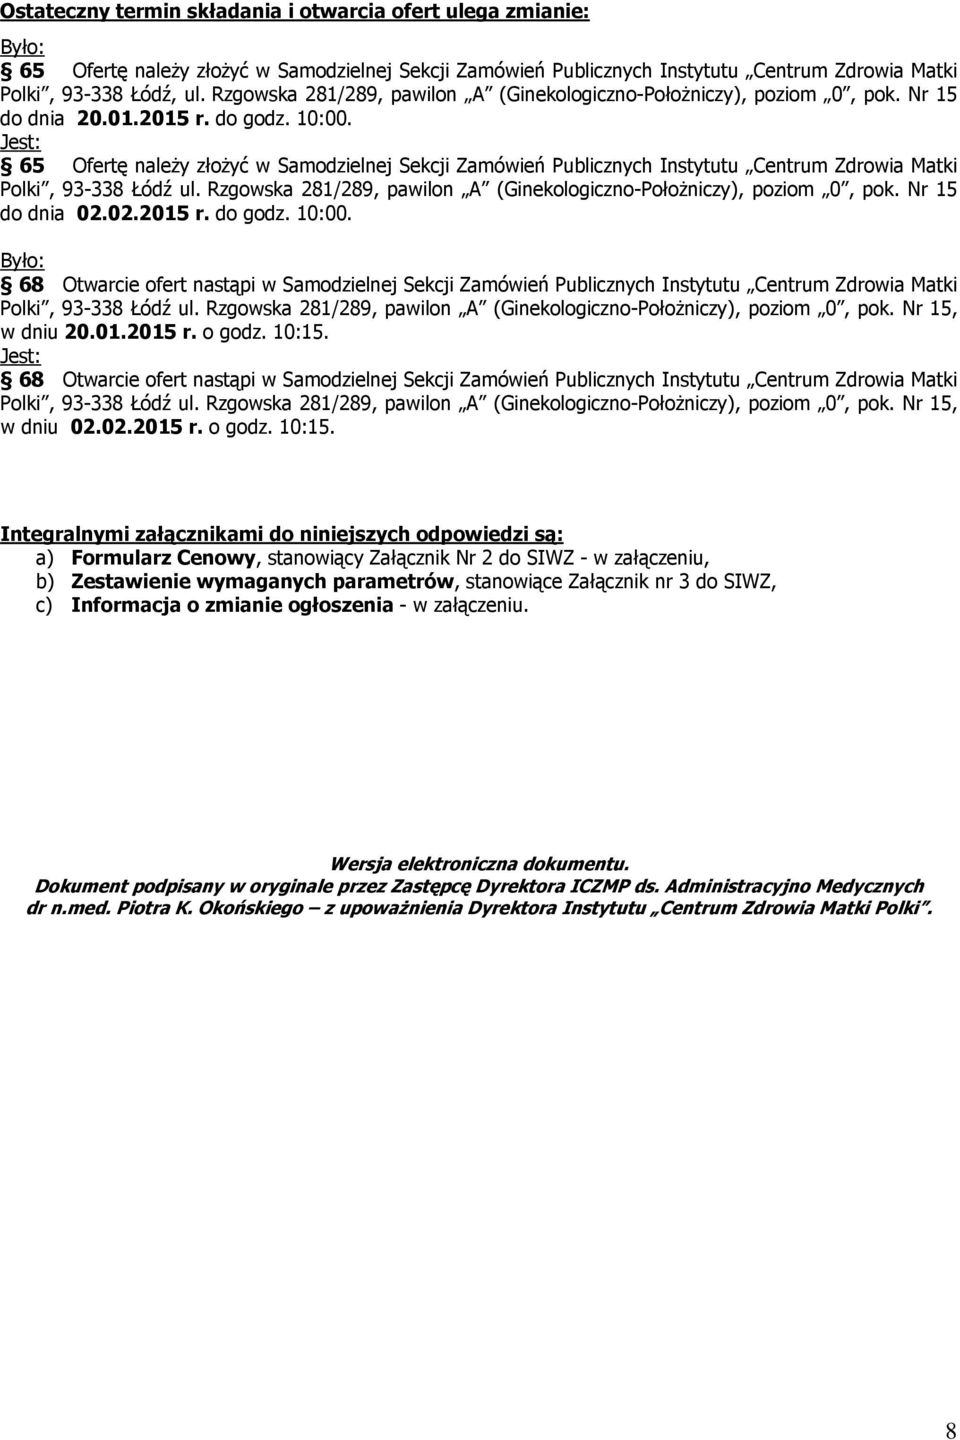 Jest: 65 Ofertę należy złożyć w Samodzielnej Sekcji Zamówień Publicznych Instytutu Centrum Zdrowia Matki Polki, 93-338 Łódź ul. Rzgowska 281/289, pawilon A (Ginekologiczno-Położniczy), poziom 0, pok.